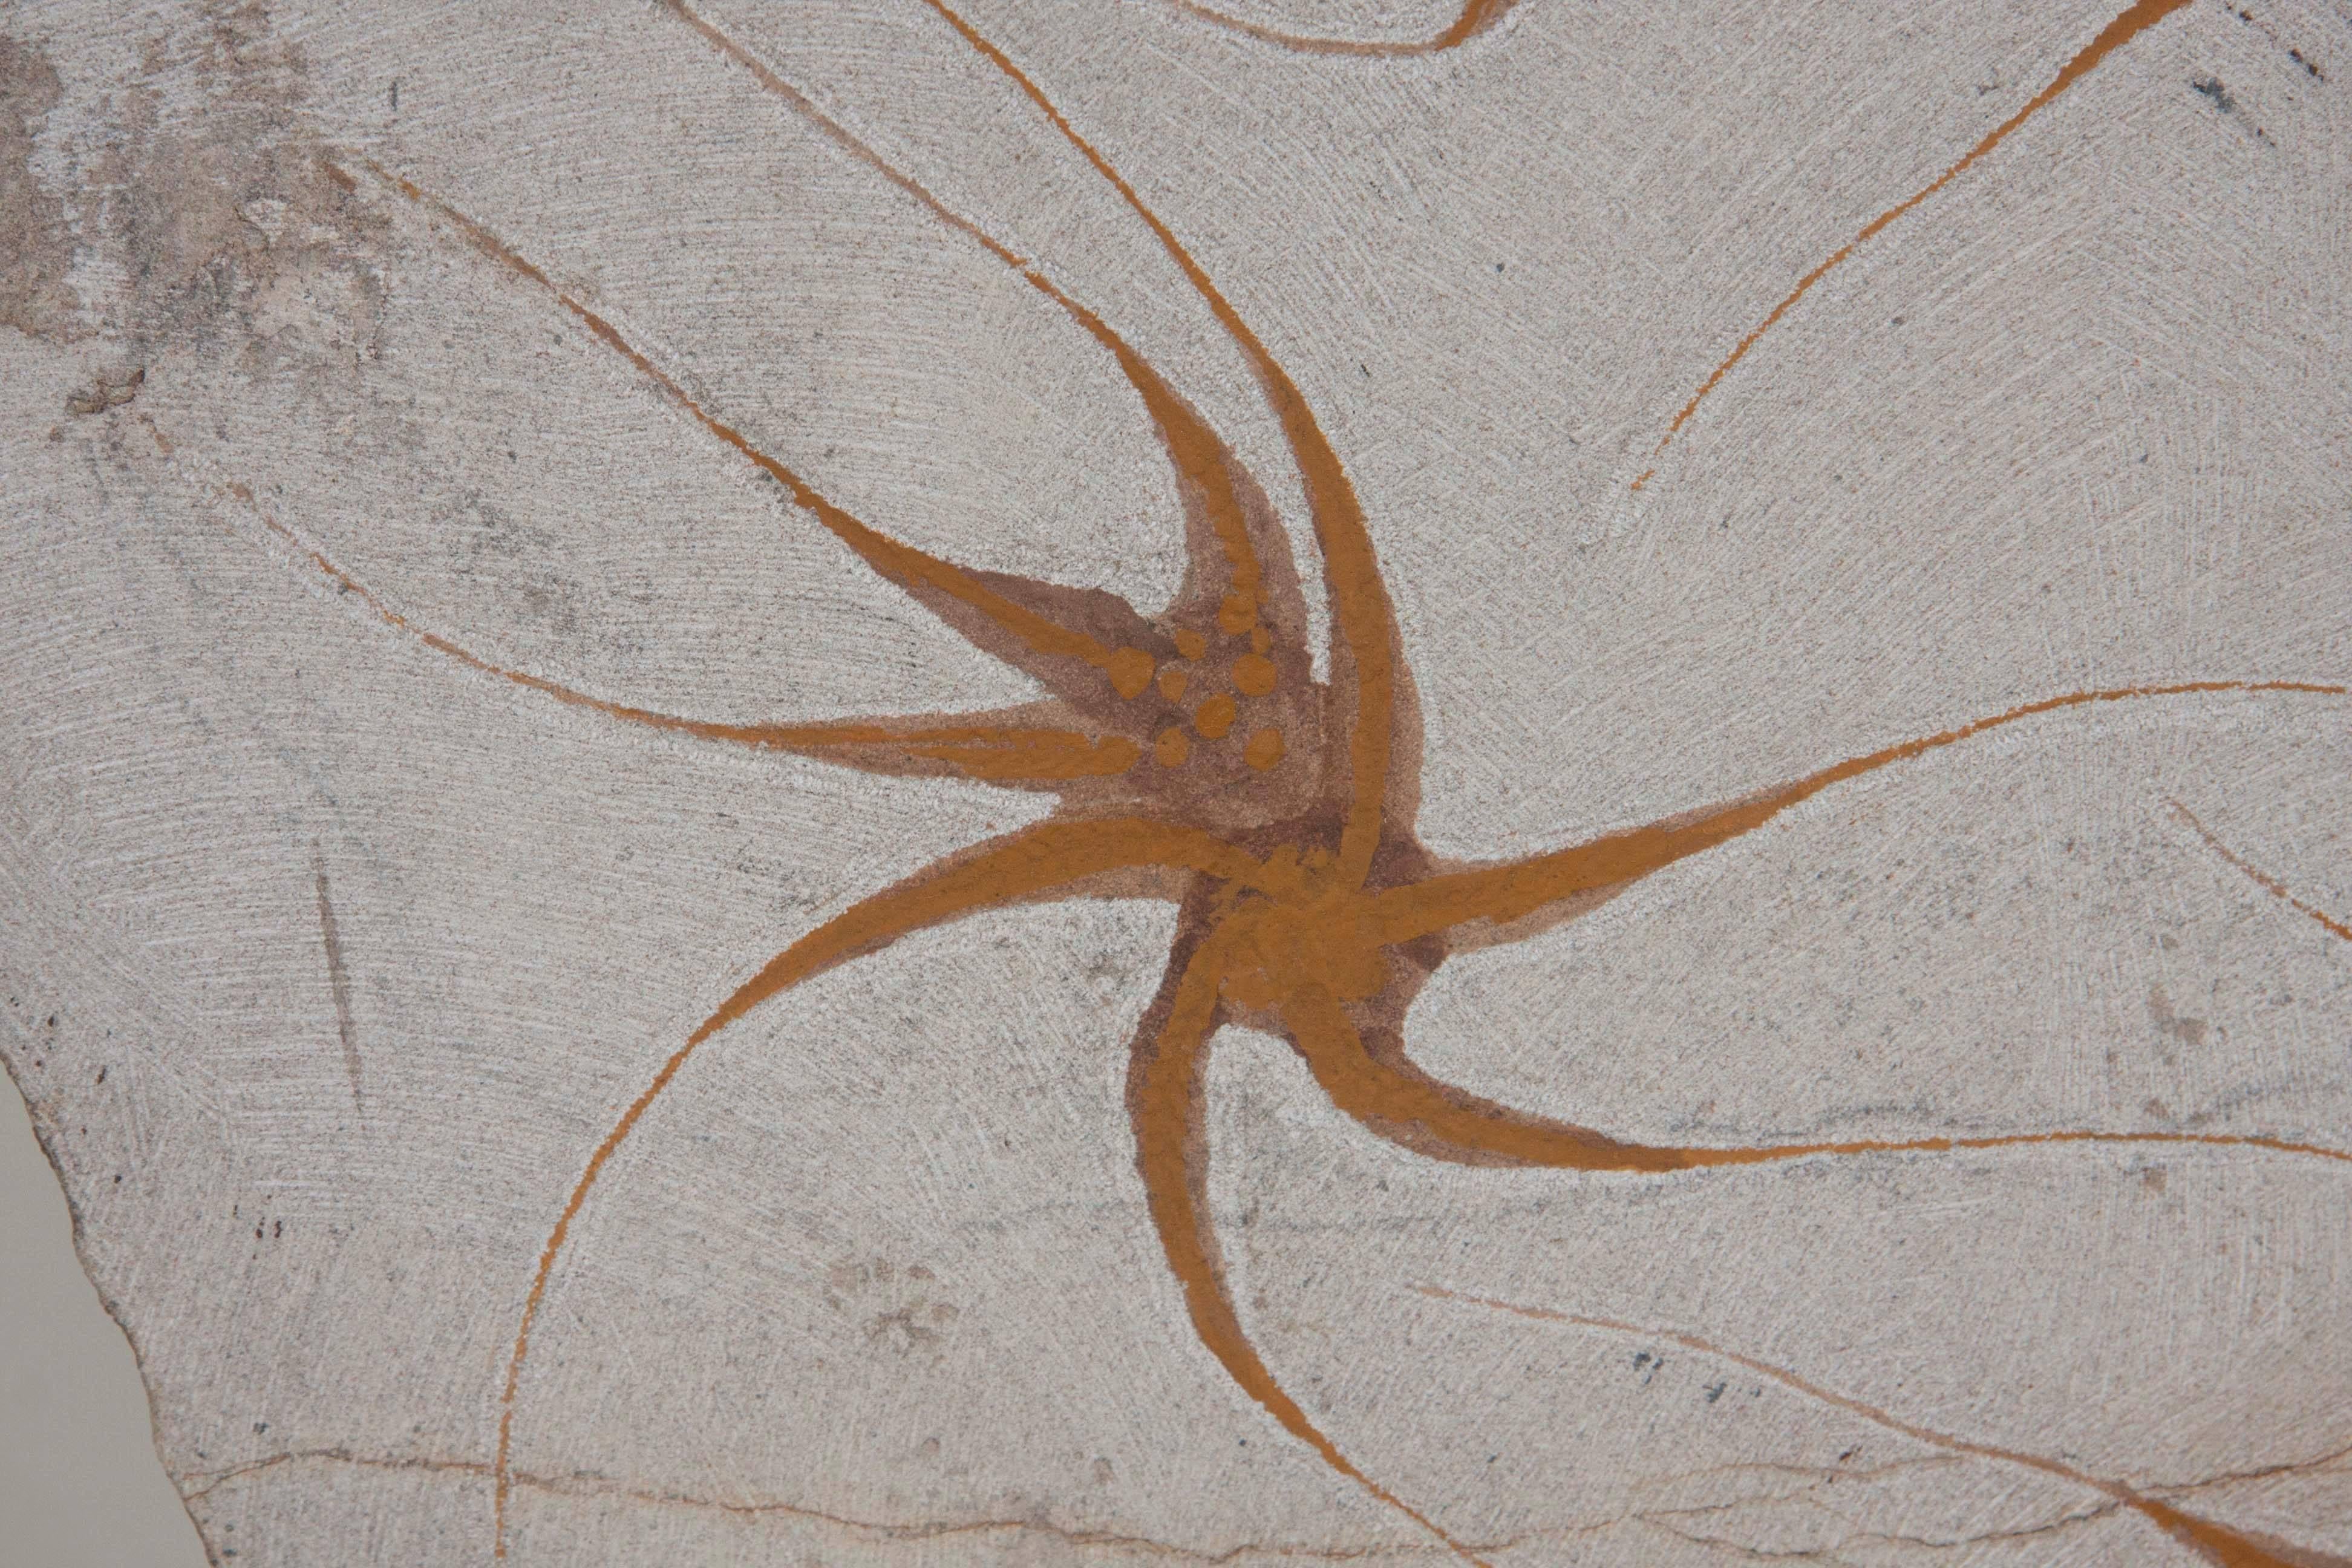 Nine Brittle Starfish Fossils 